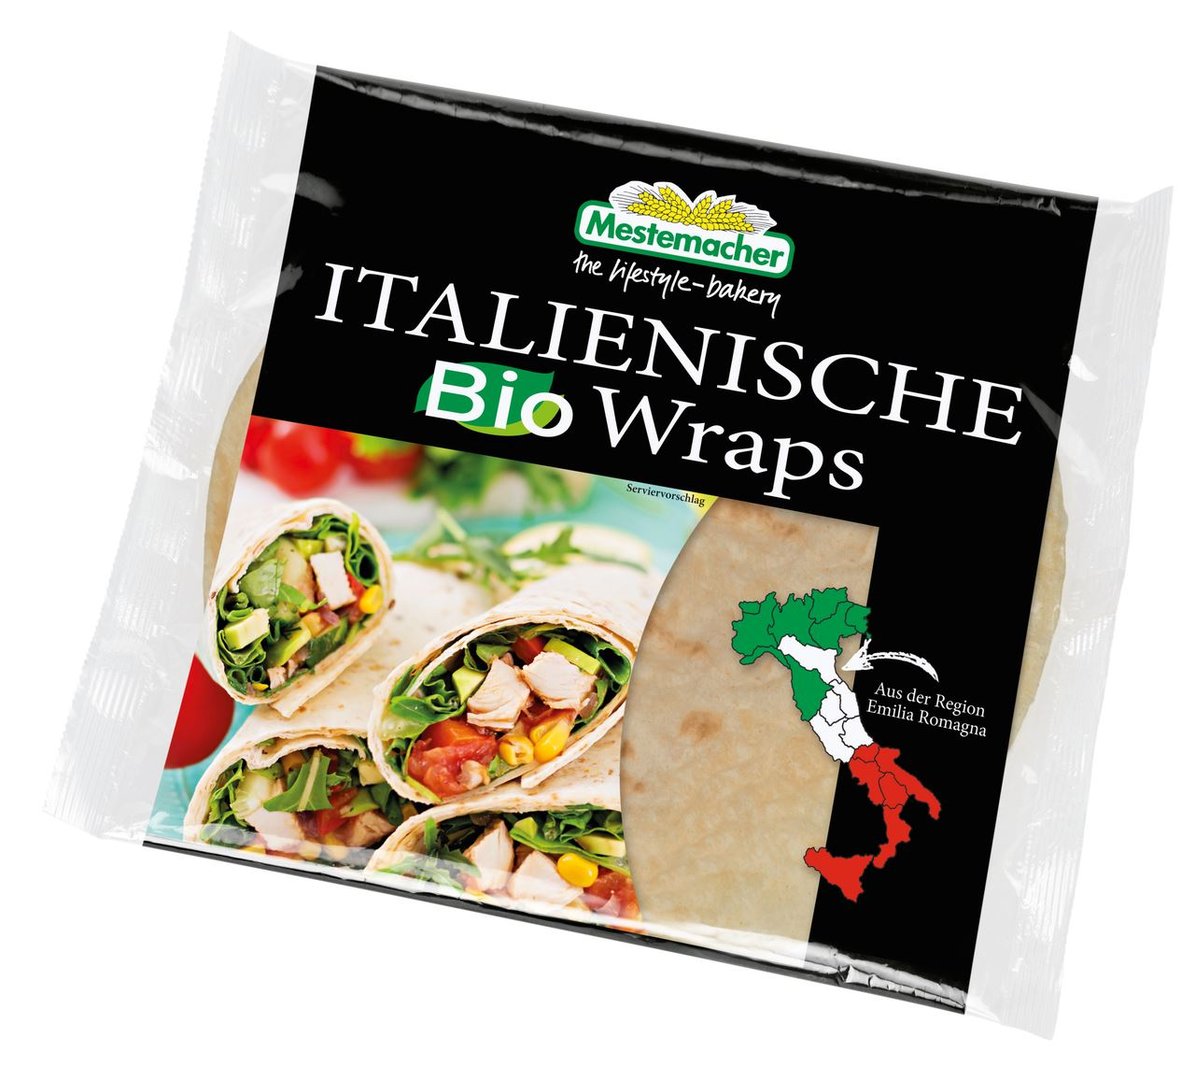 Mestemacher - Italienische Bio Wraps, 3 Stück - 225 g Stück